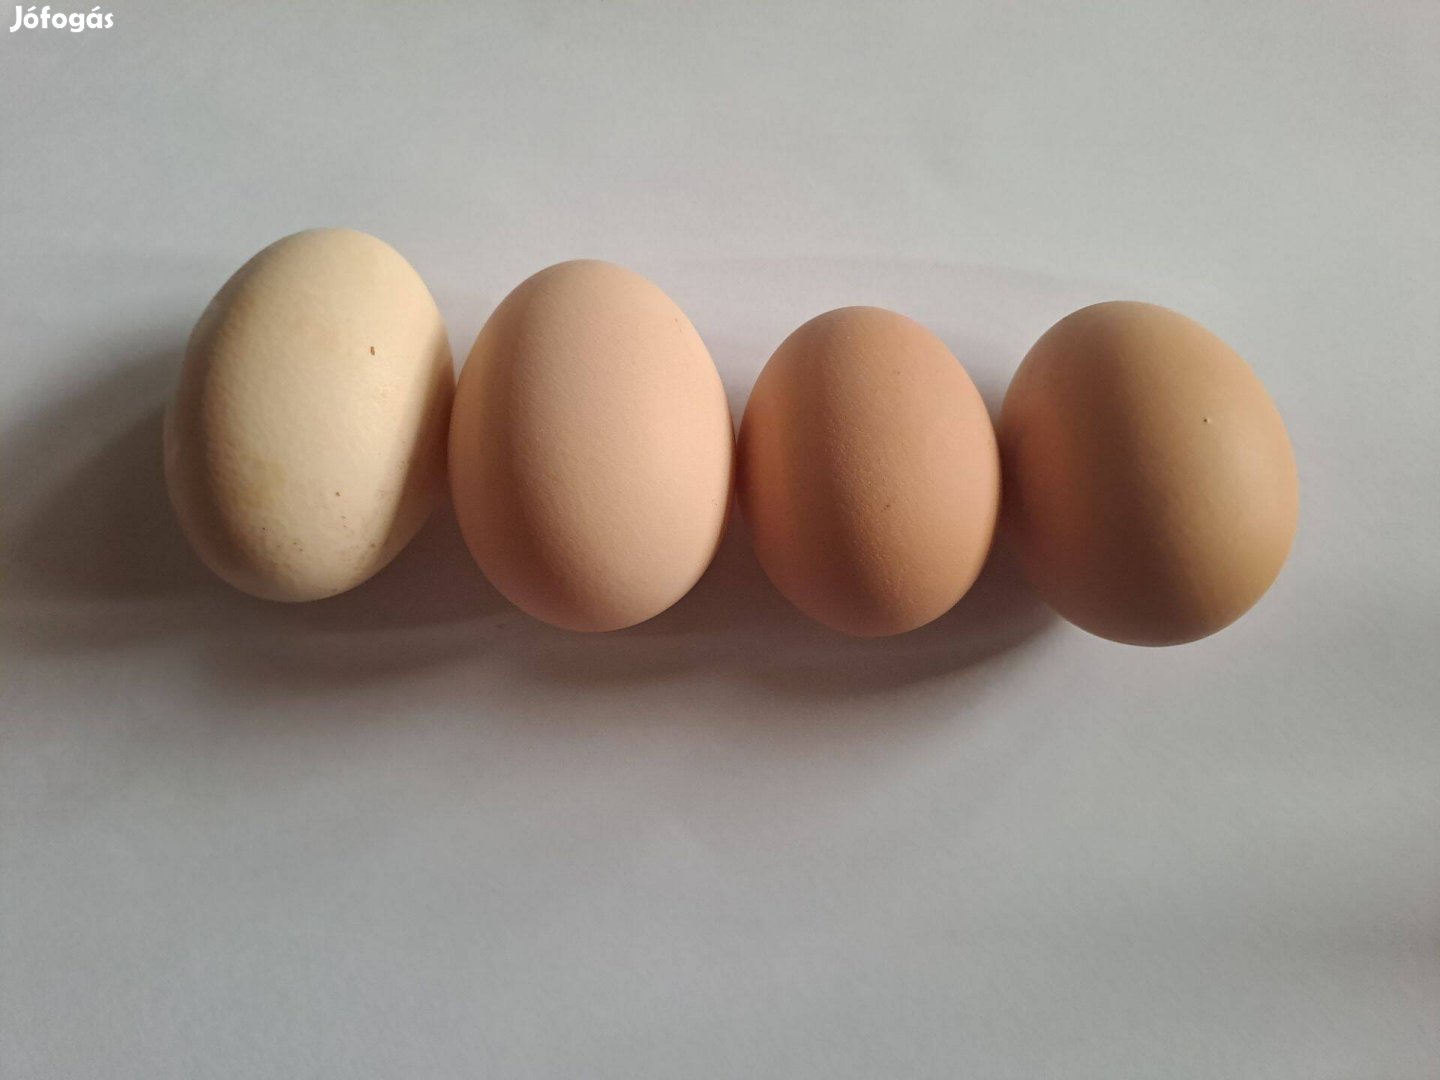 Keltetni való tojás eladó Akció! 99% termékeny Több db akár rendelésre